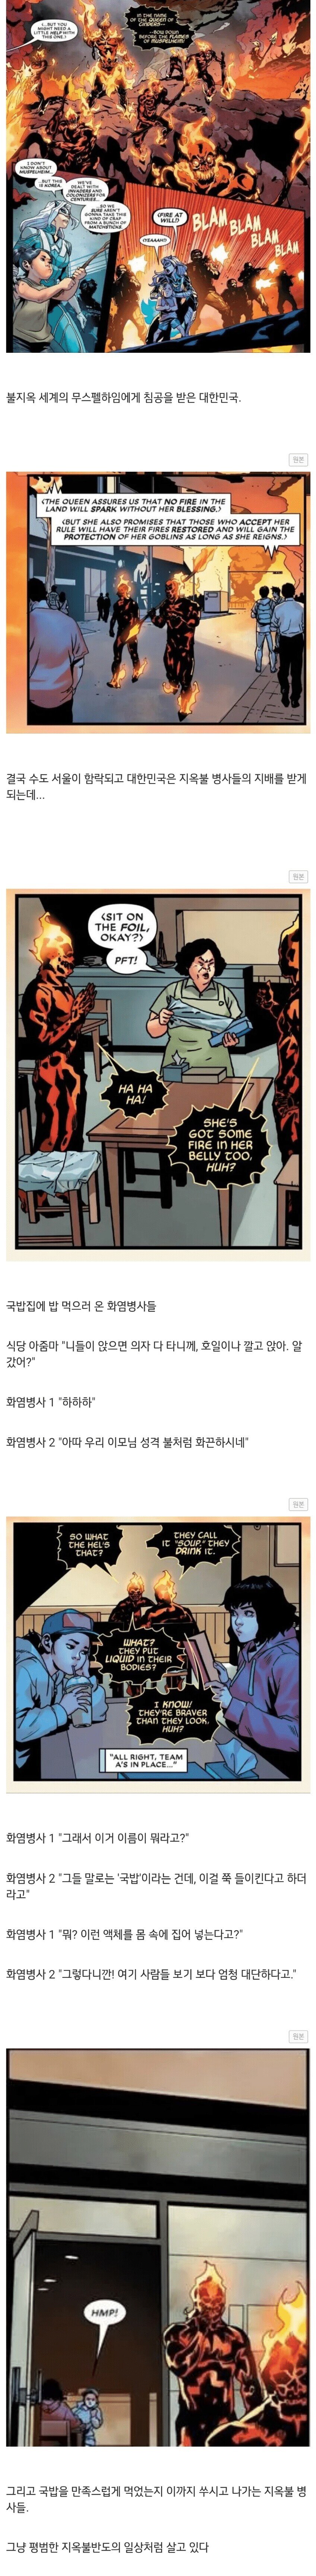 불지옥 침공 받은 마블 속 한국